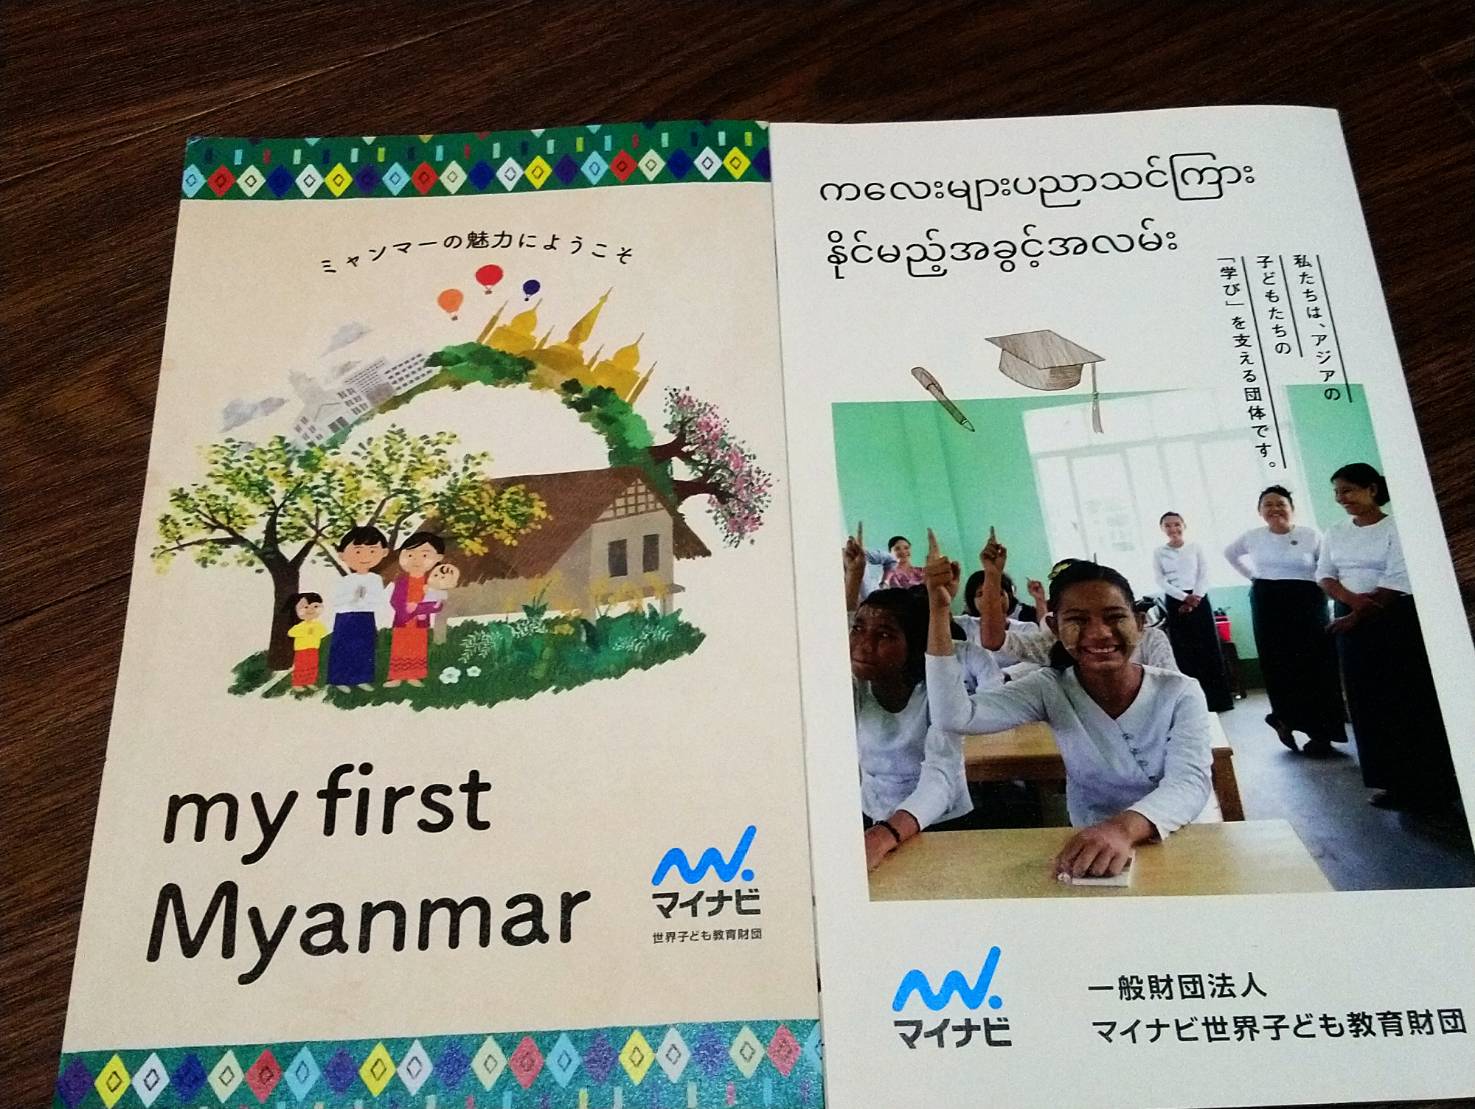 マイナビがしているらしいミャンマーでの教育支援事業のパンフ